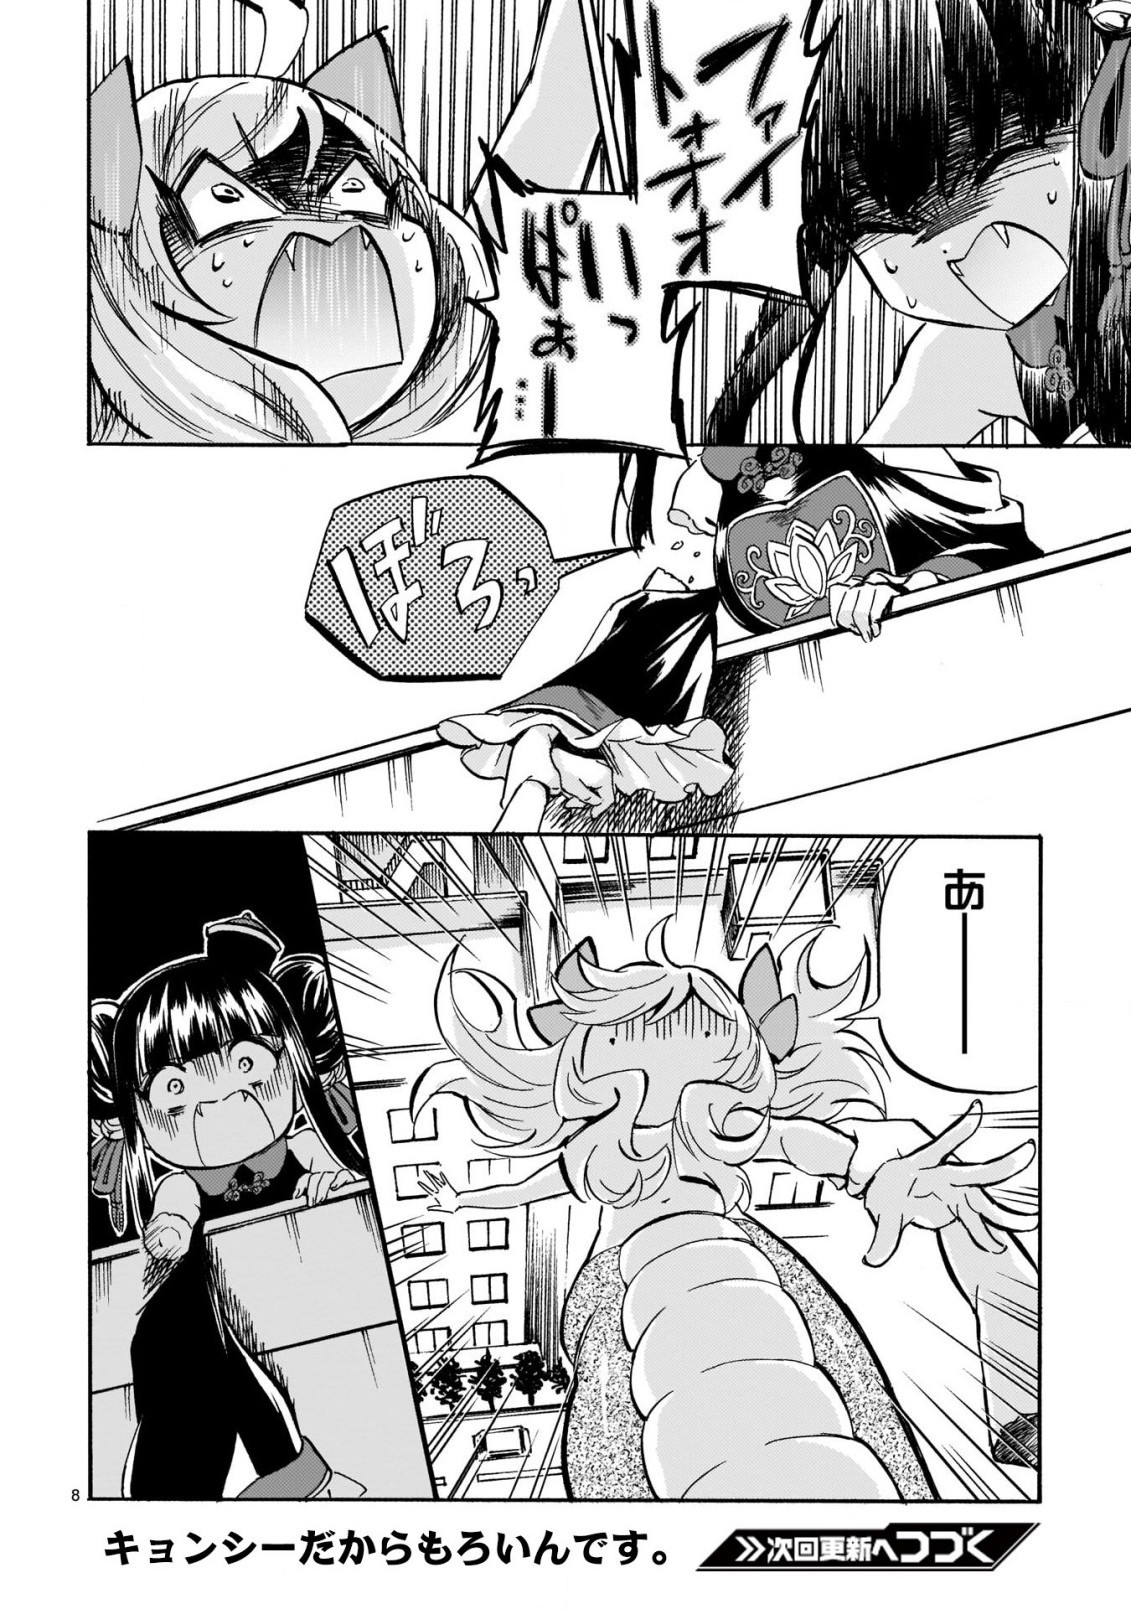 Jashin-chan Dropkick - Chapter 203 - Page 8